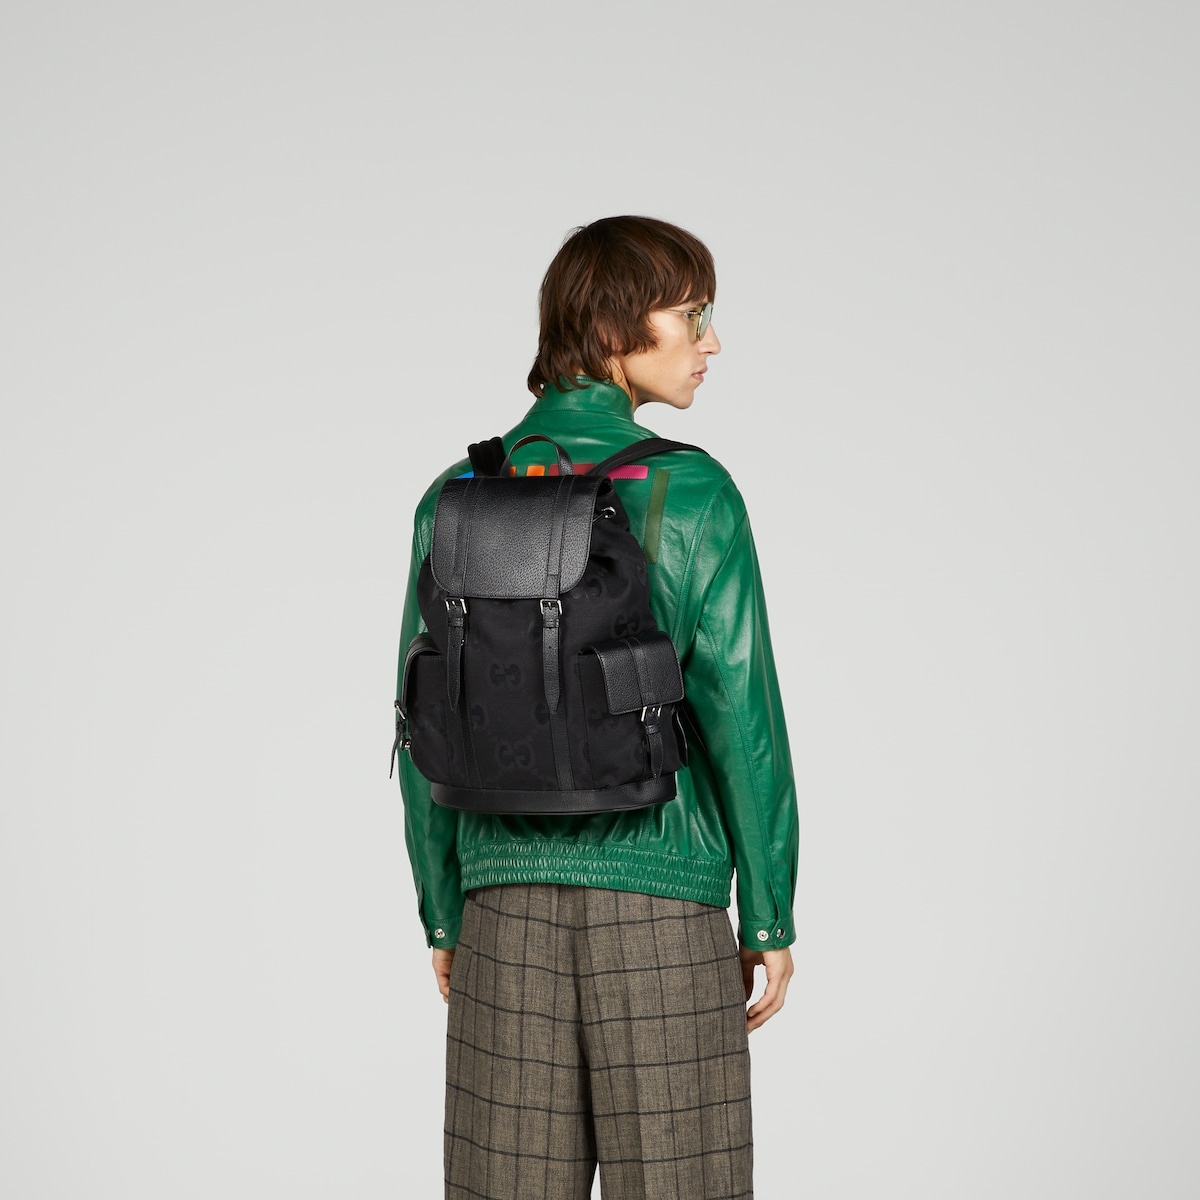 Jumbo GG backpack - 3